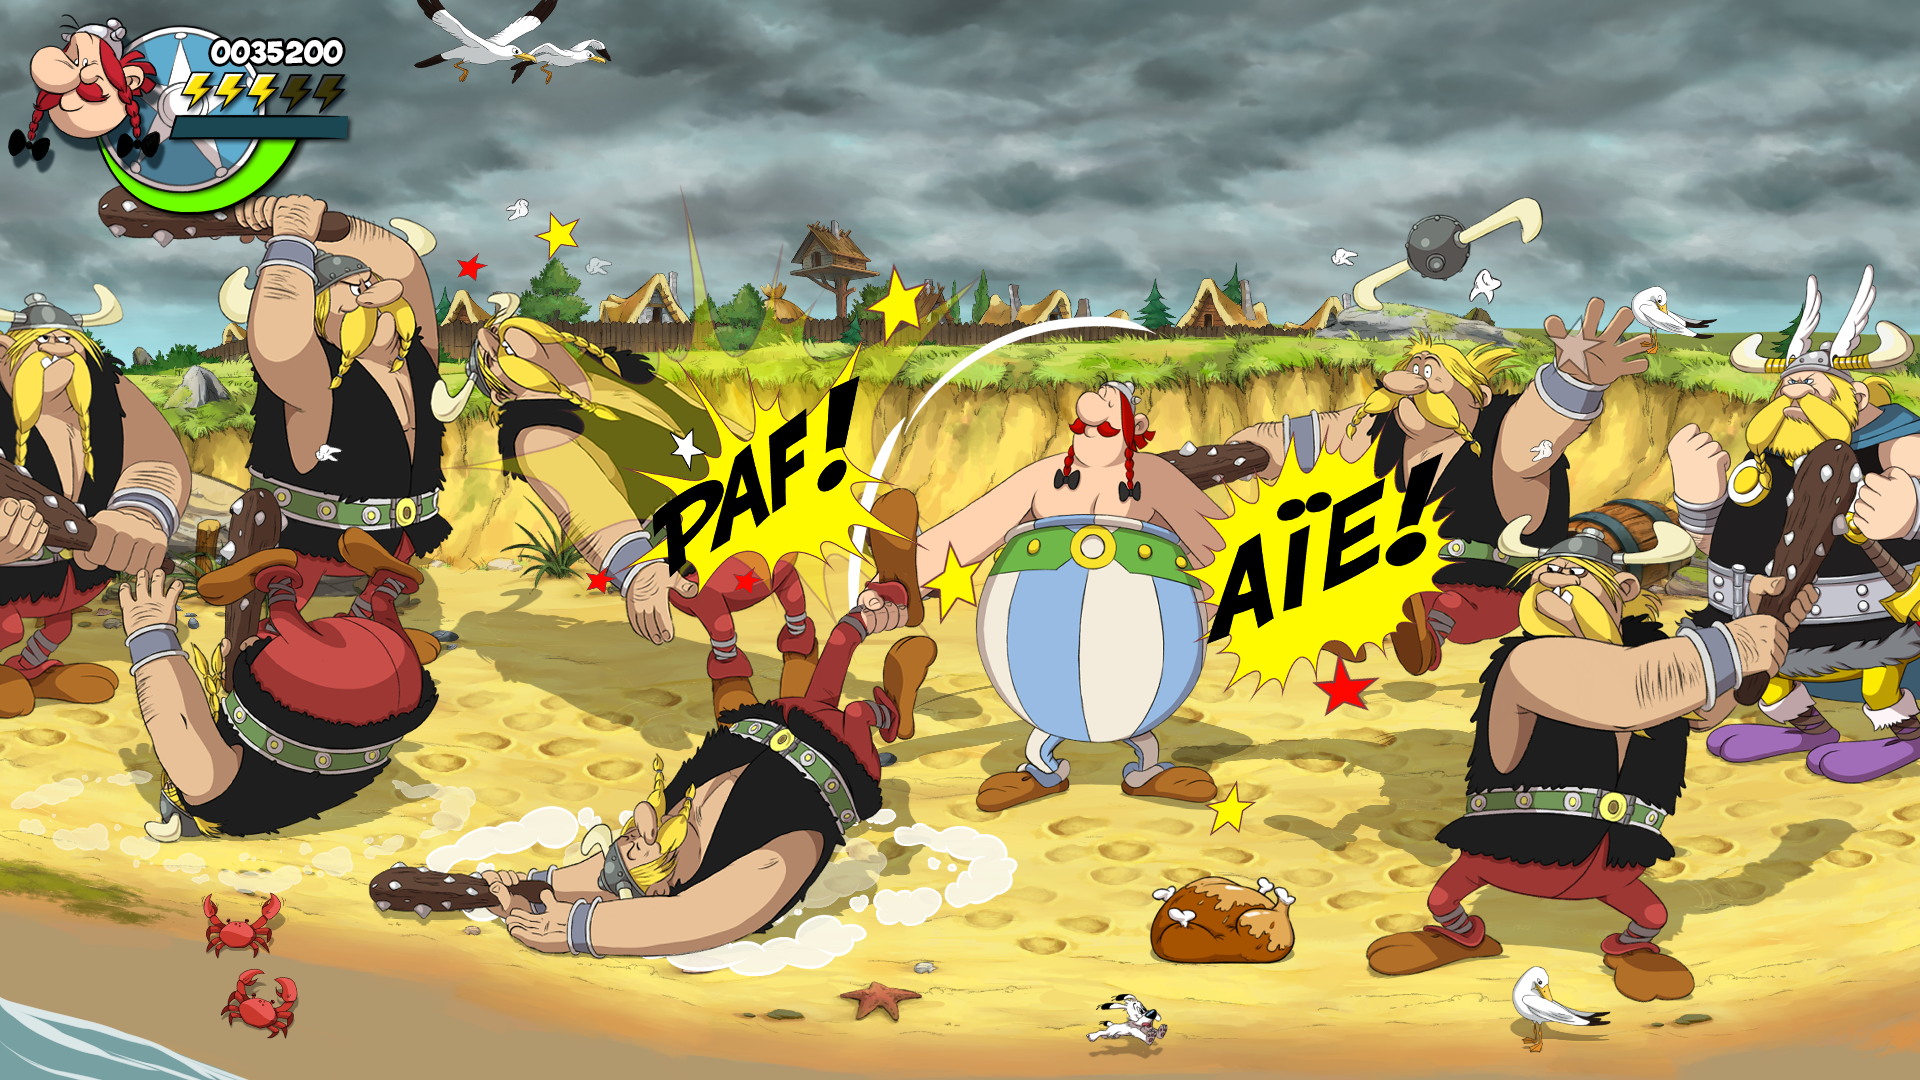 Asterix & Obelix: Slap them All! - screenshot 7